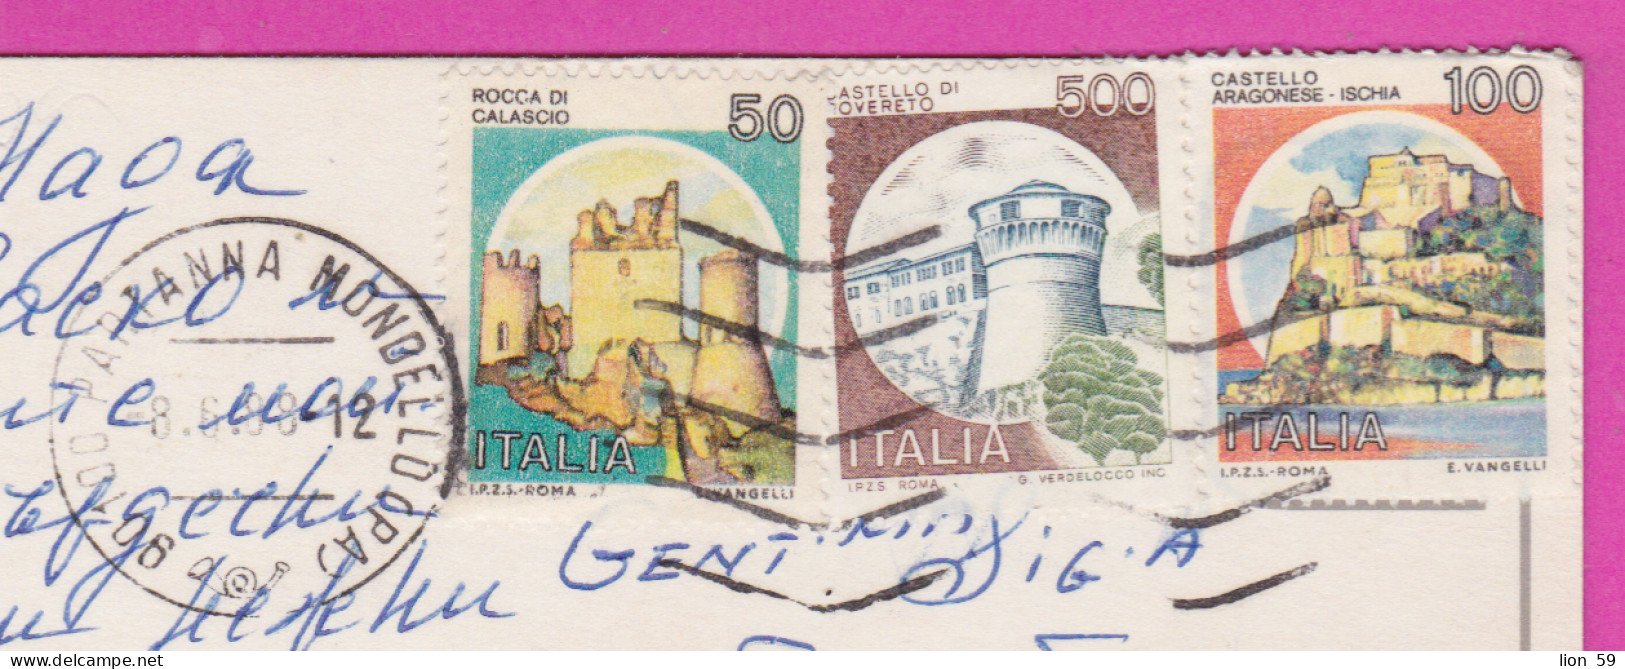 293825 / Italy - Saluti Da Mondello PC 1988 USED 50+100+500 L  Rocca Di Calascio Castello Aragonese - Ischia Rovereto - 1981-90: Marcofilia